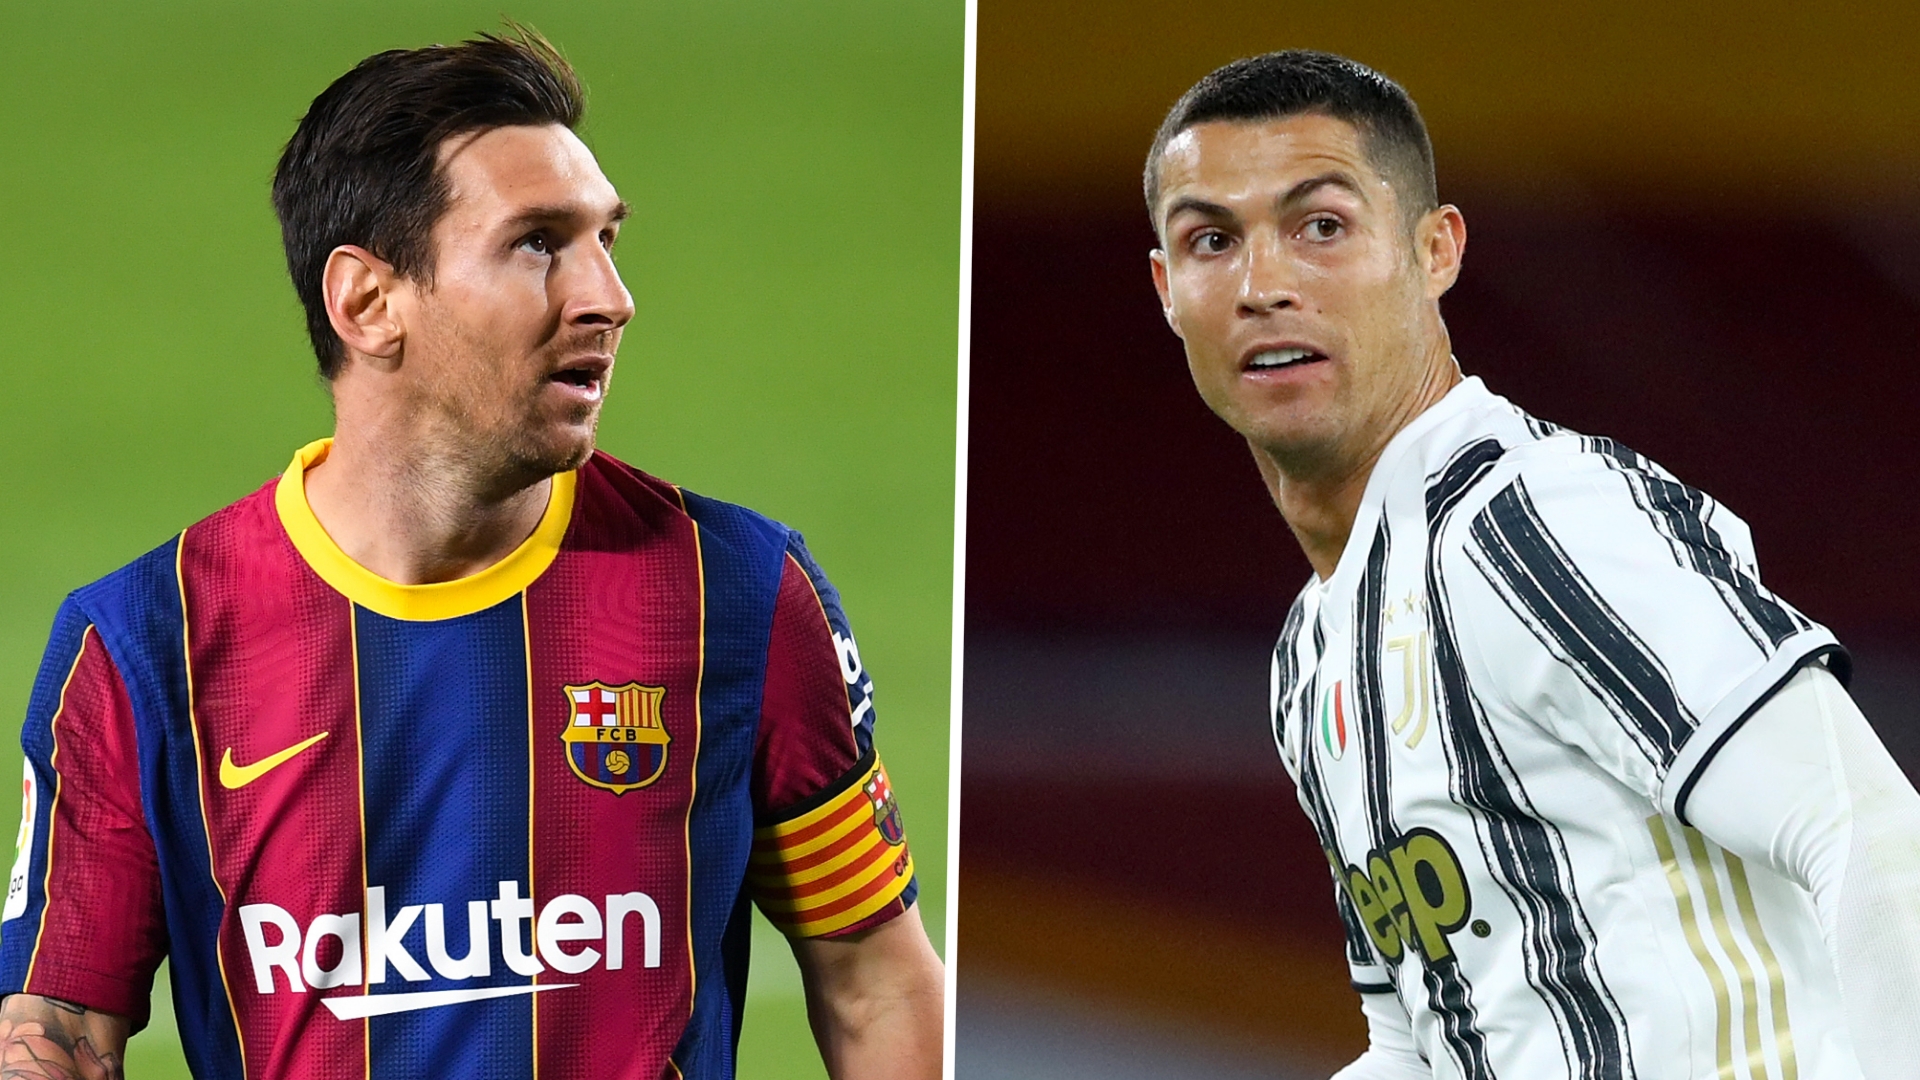 Qui aurait été vainqueur du Ballon d’Or depuis 2008 si Messi et Ronaldo n’existaient pas?